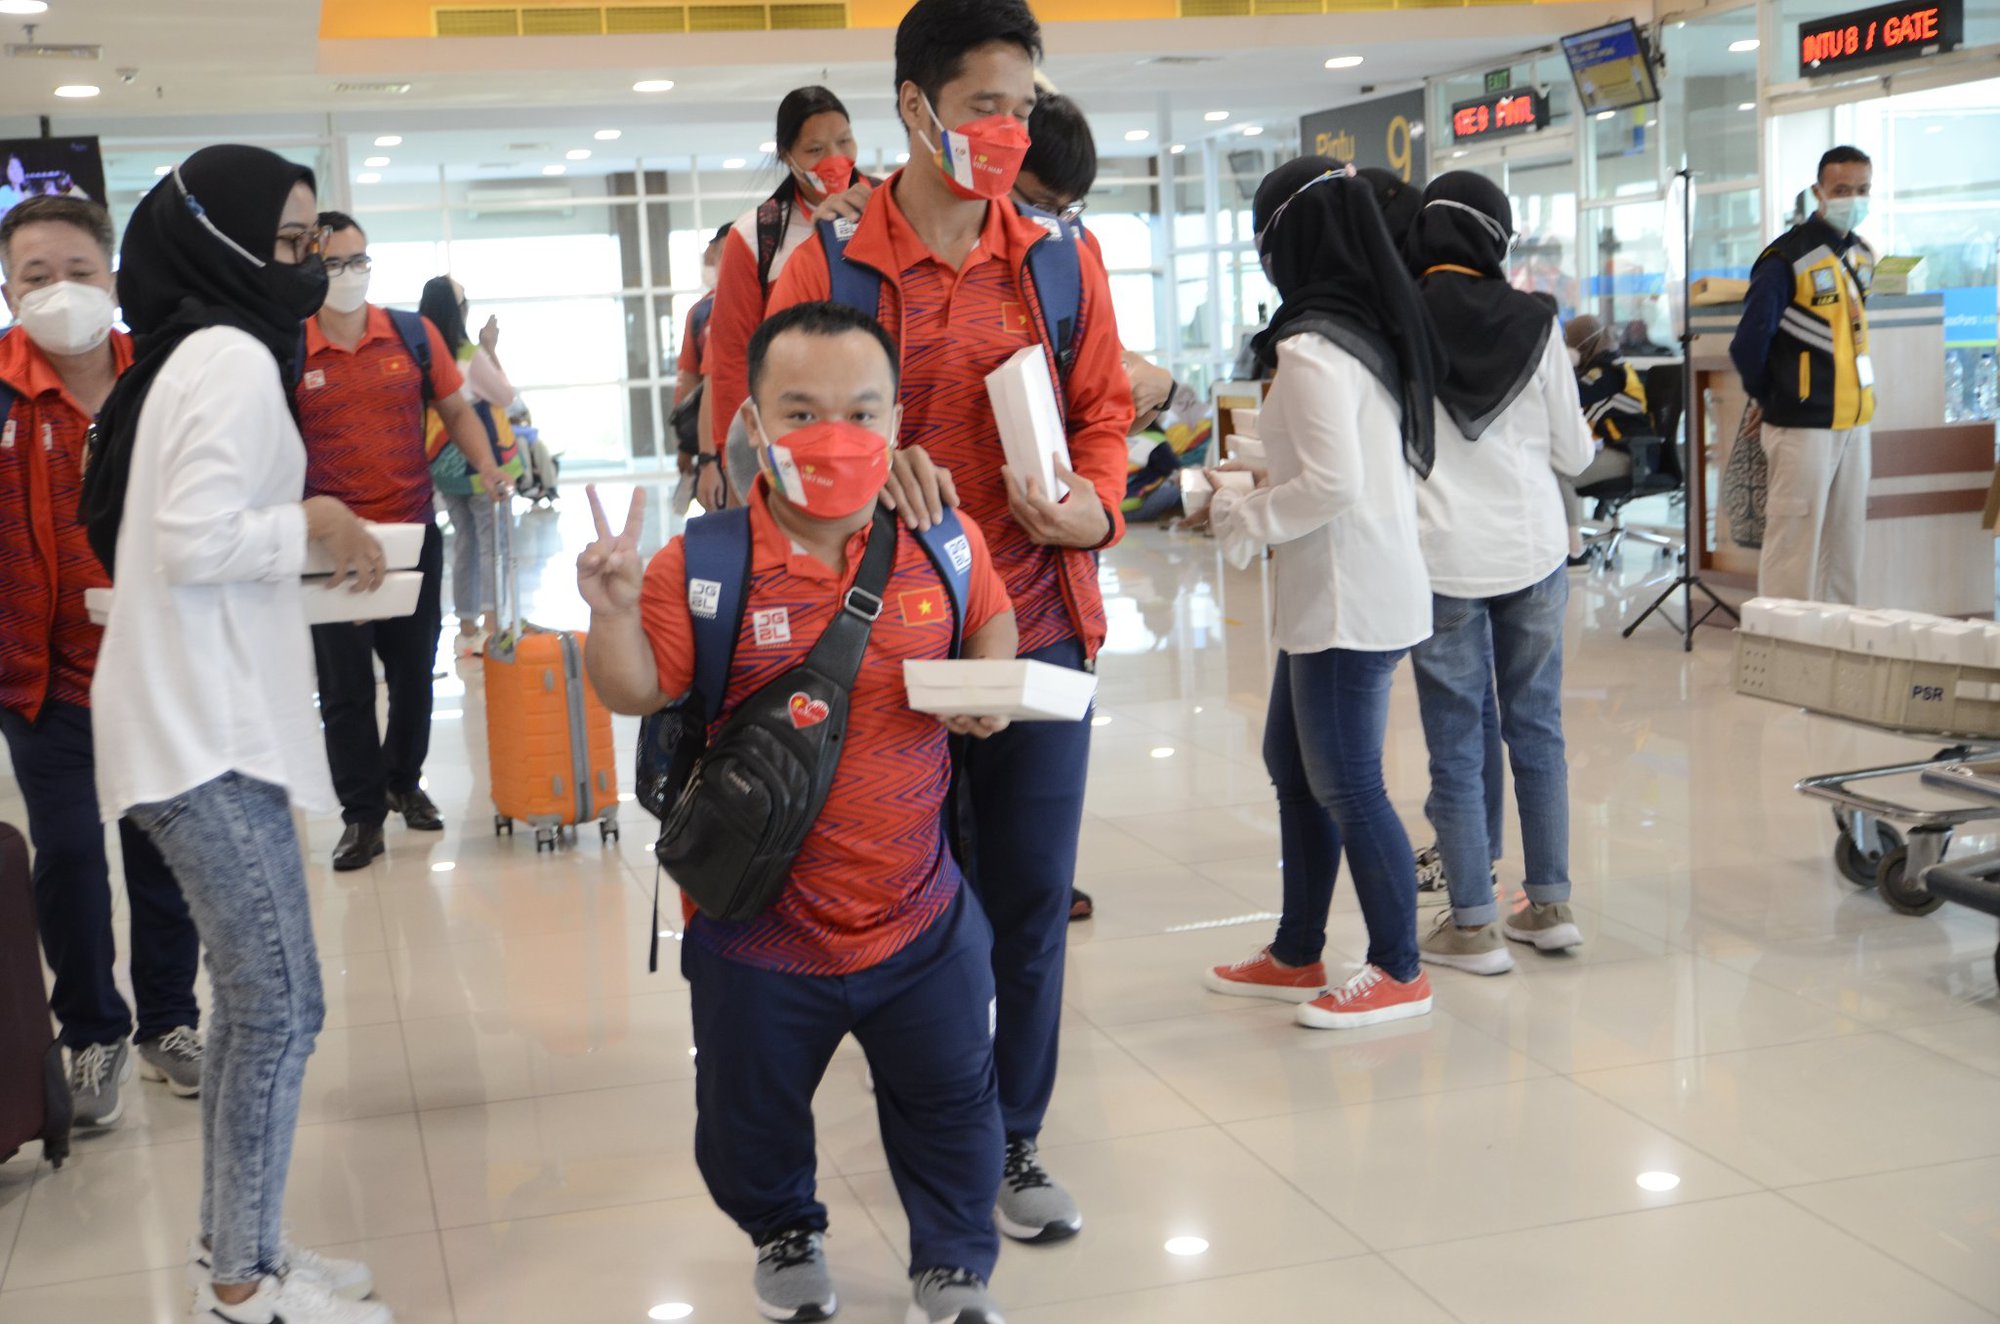 Đoàn thể thao NKT Việt Nam là đại diện cho sự nỗ lực và thành công của các vận động viên trẻ Việt Nam. Trong các giải đấu quốc tế, đại diện của Việt Nam đã có những chiến thắng ấn tượng, đóng góp vào việc nâng cao vị thế của đất nước và góp phần tiếp thu và học hỏi từ các quốc gia khác.